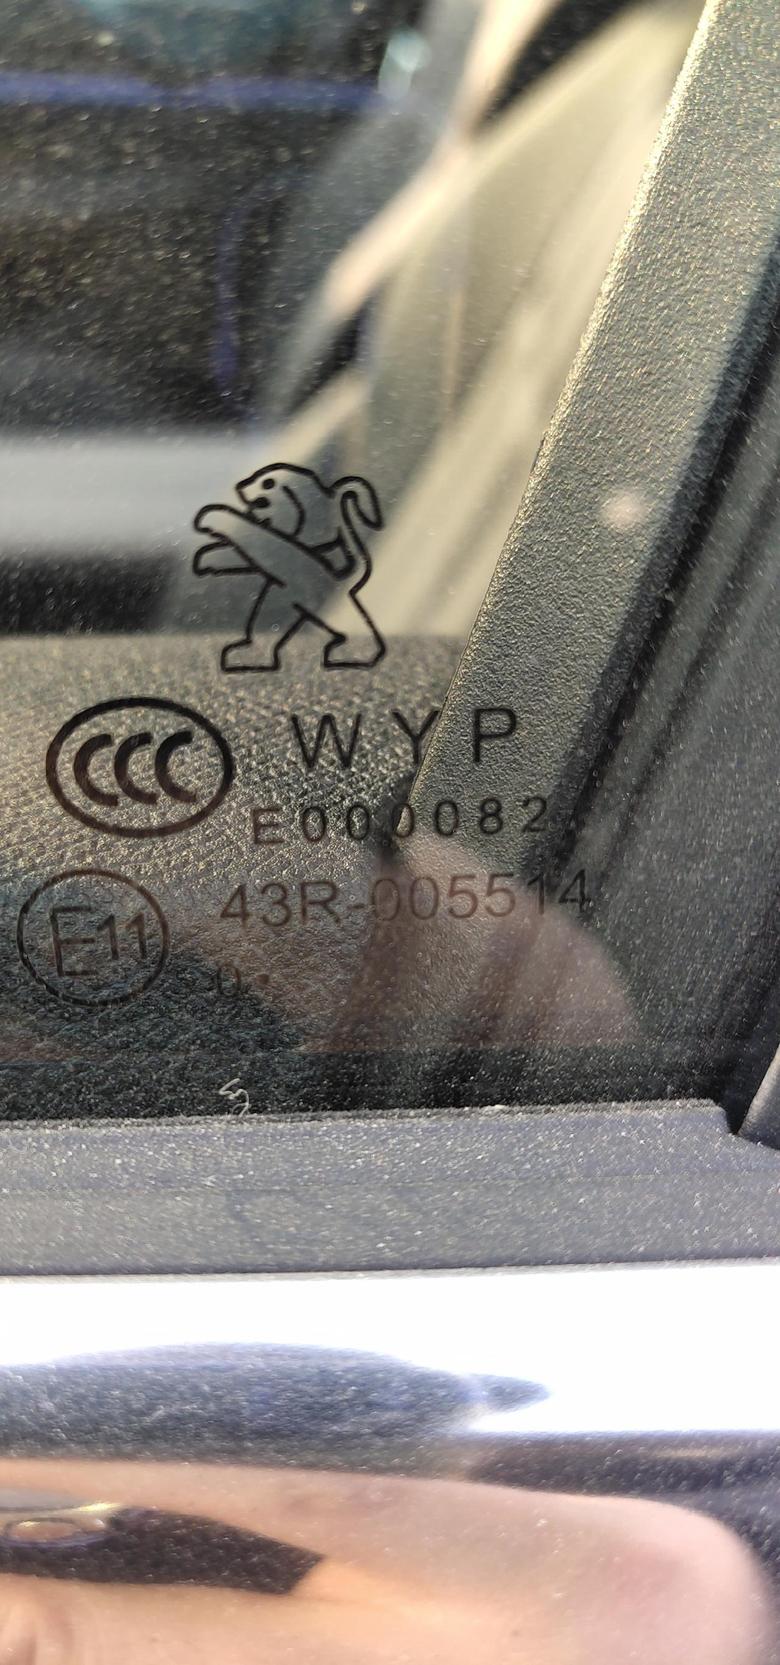 标致508l 提车一个月才发现这一辆车的玻璃还不是同一个品牌的，有的玻璃是WYP的，有的玻璃是圣戈班的，这什么情况